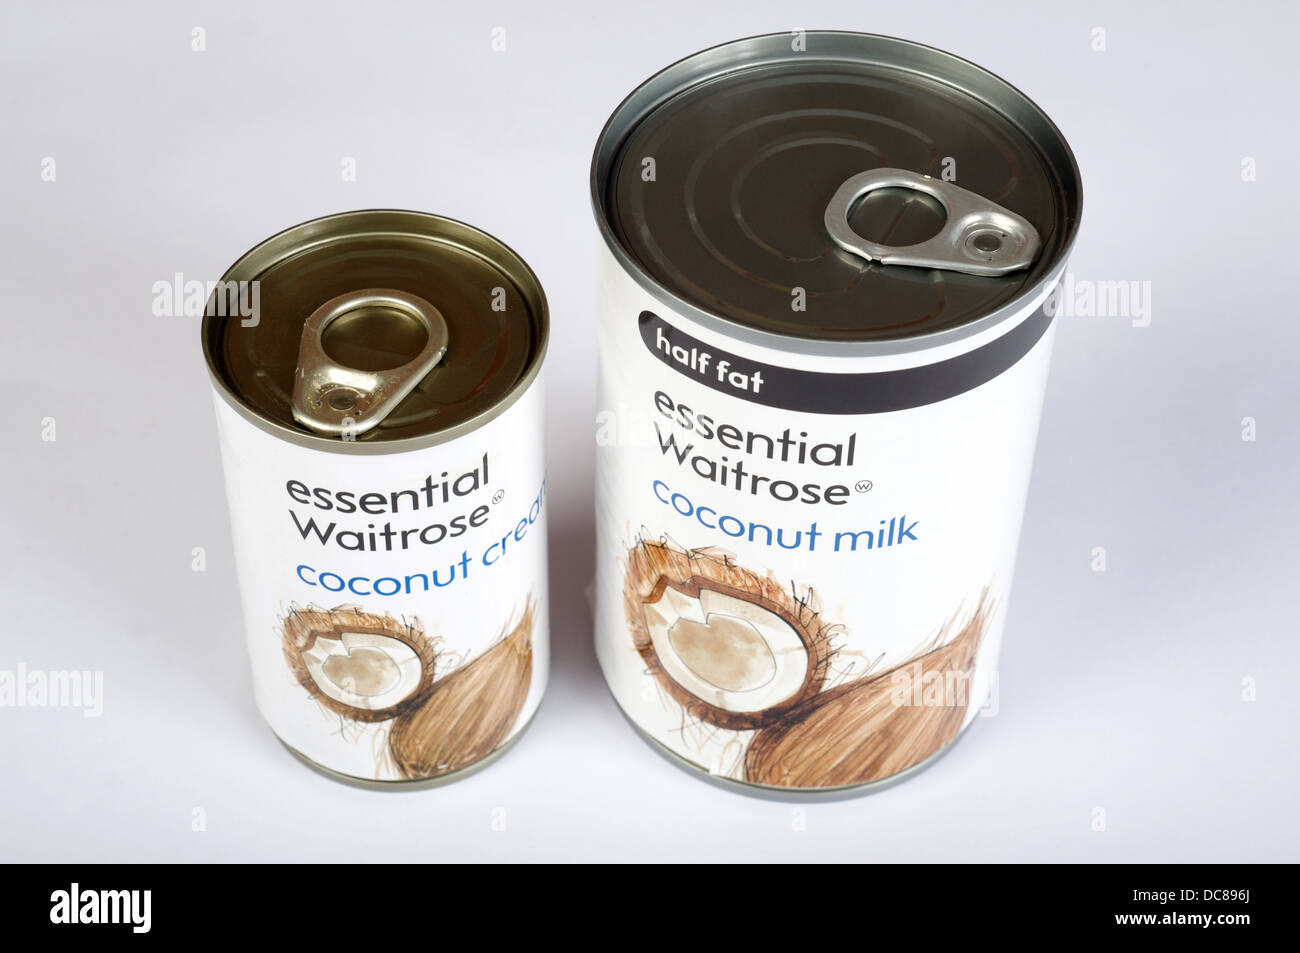 Waitrose essentials coconut cream and coconut milk Stock Photo